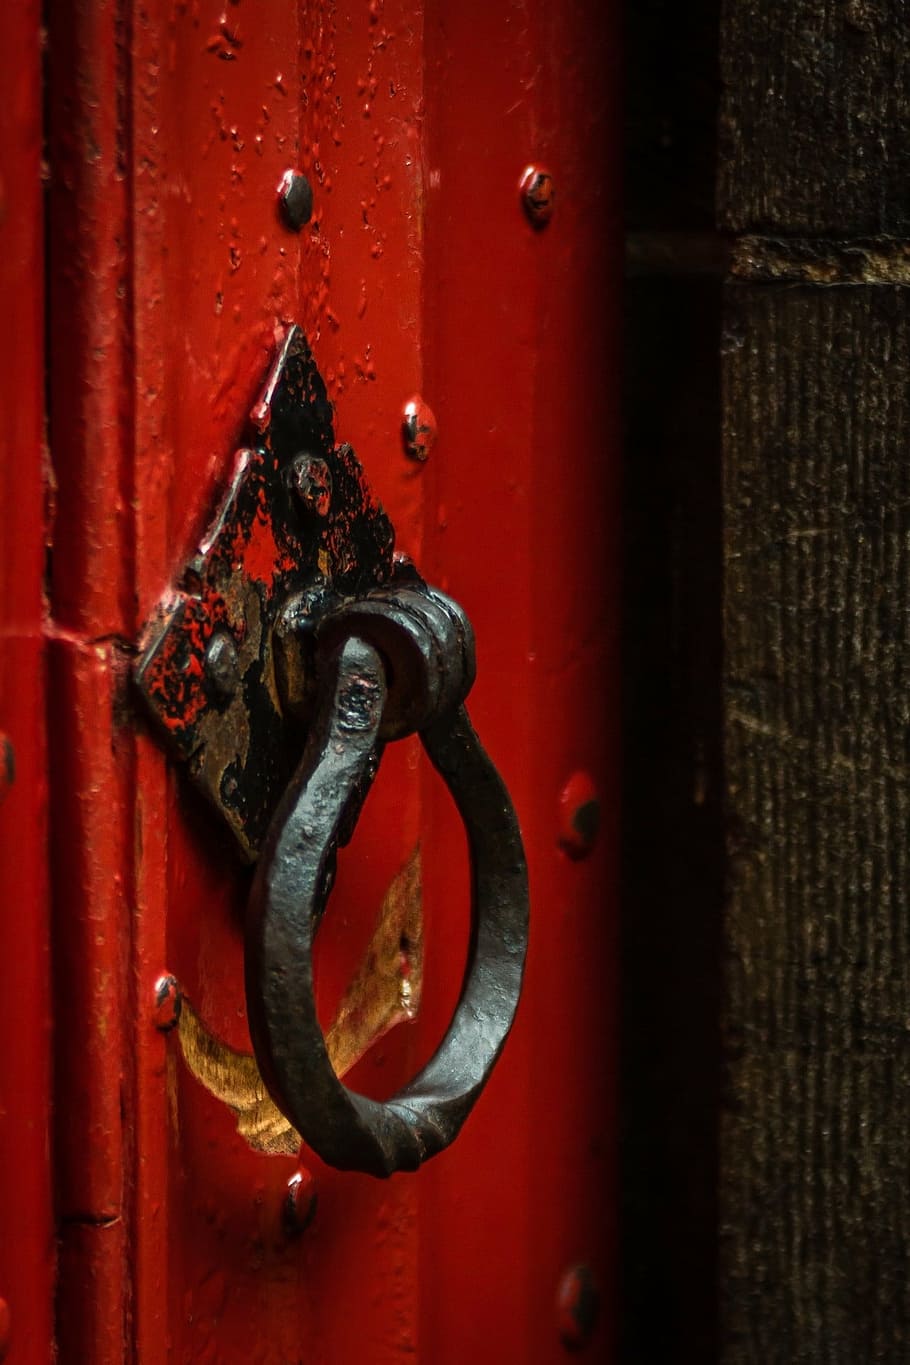 black metal door knocker, doorknocker, red, thumper, ring, input